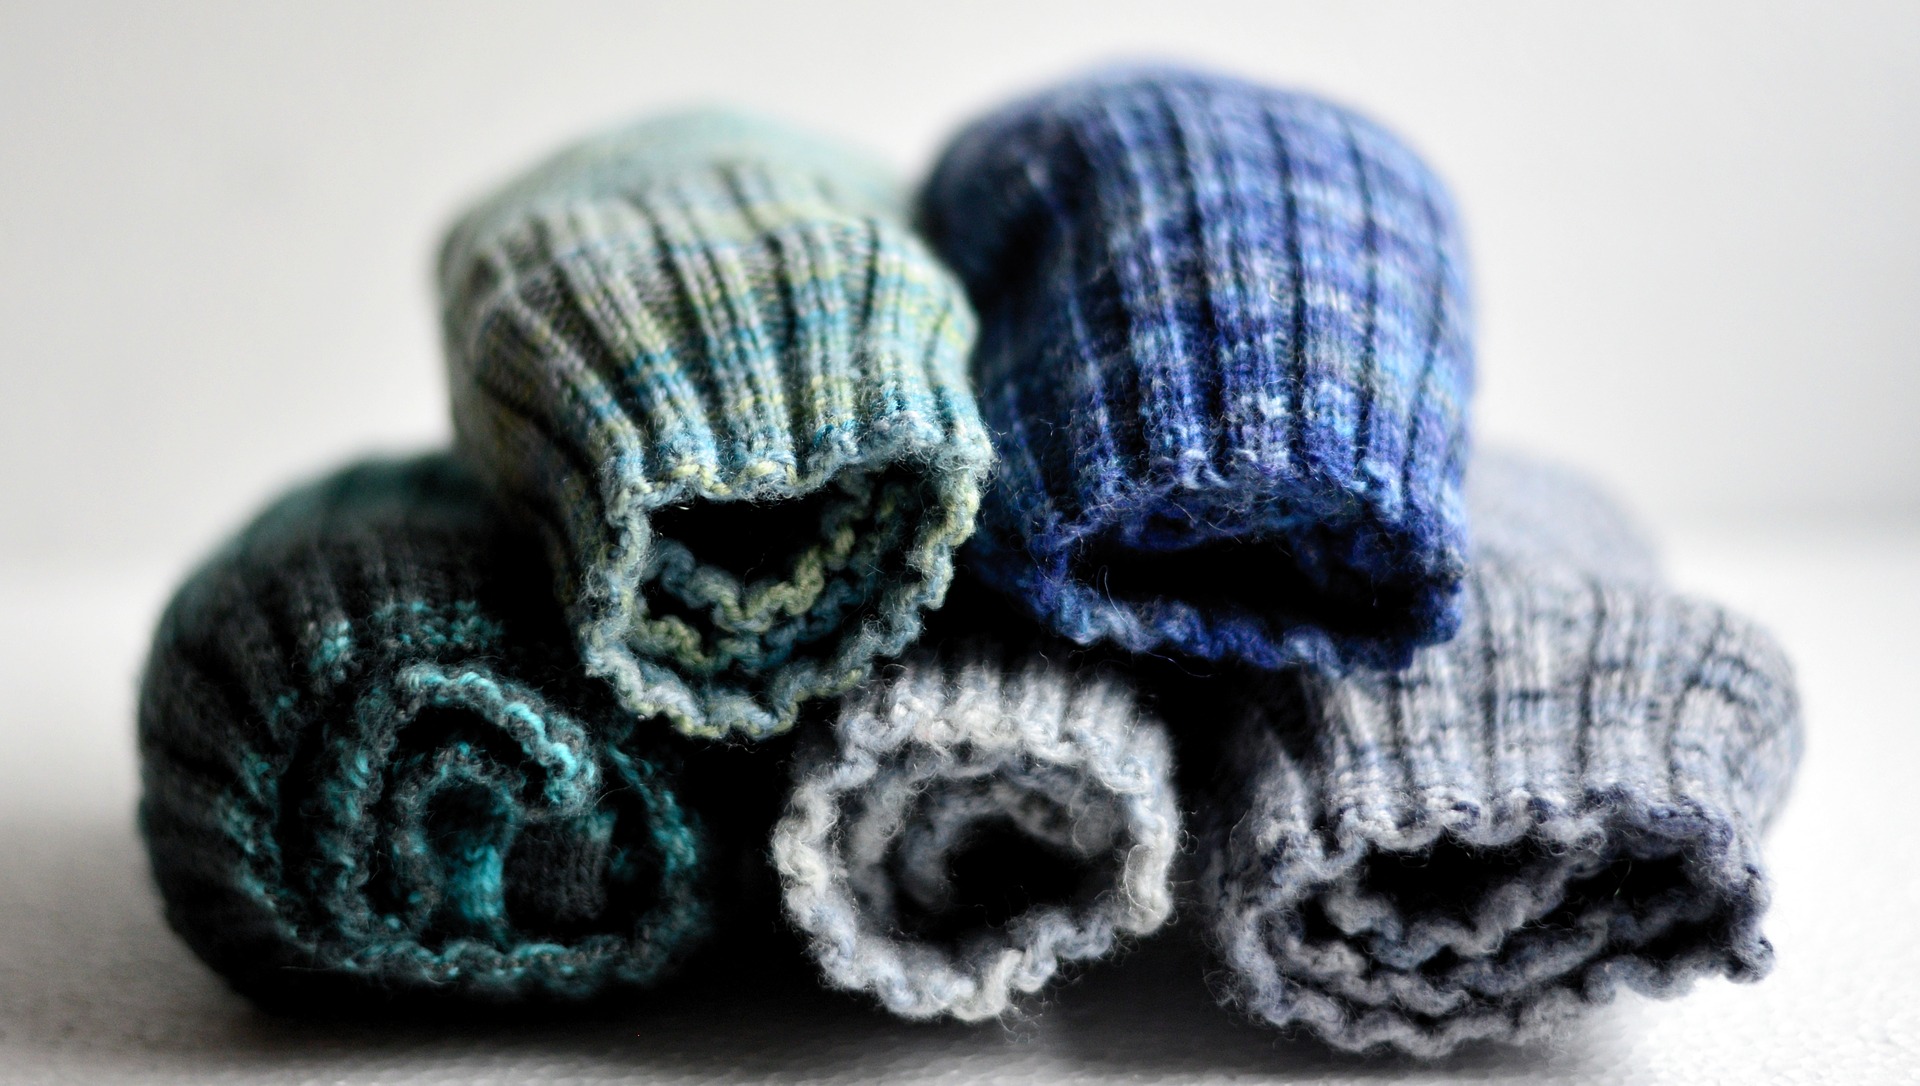 実はシンプルな靴下の編み方はこれではないか 編み物で世界を広げよう